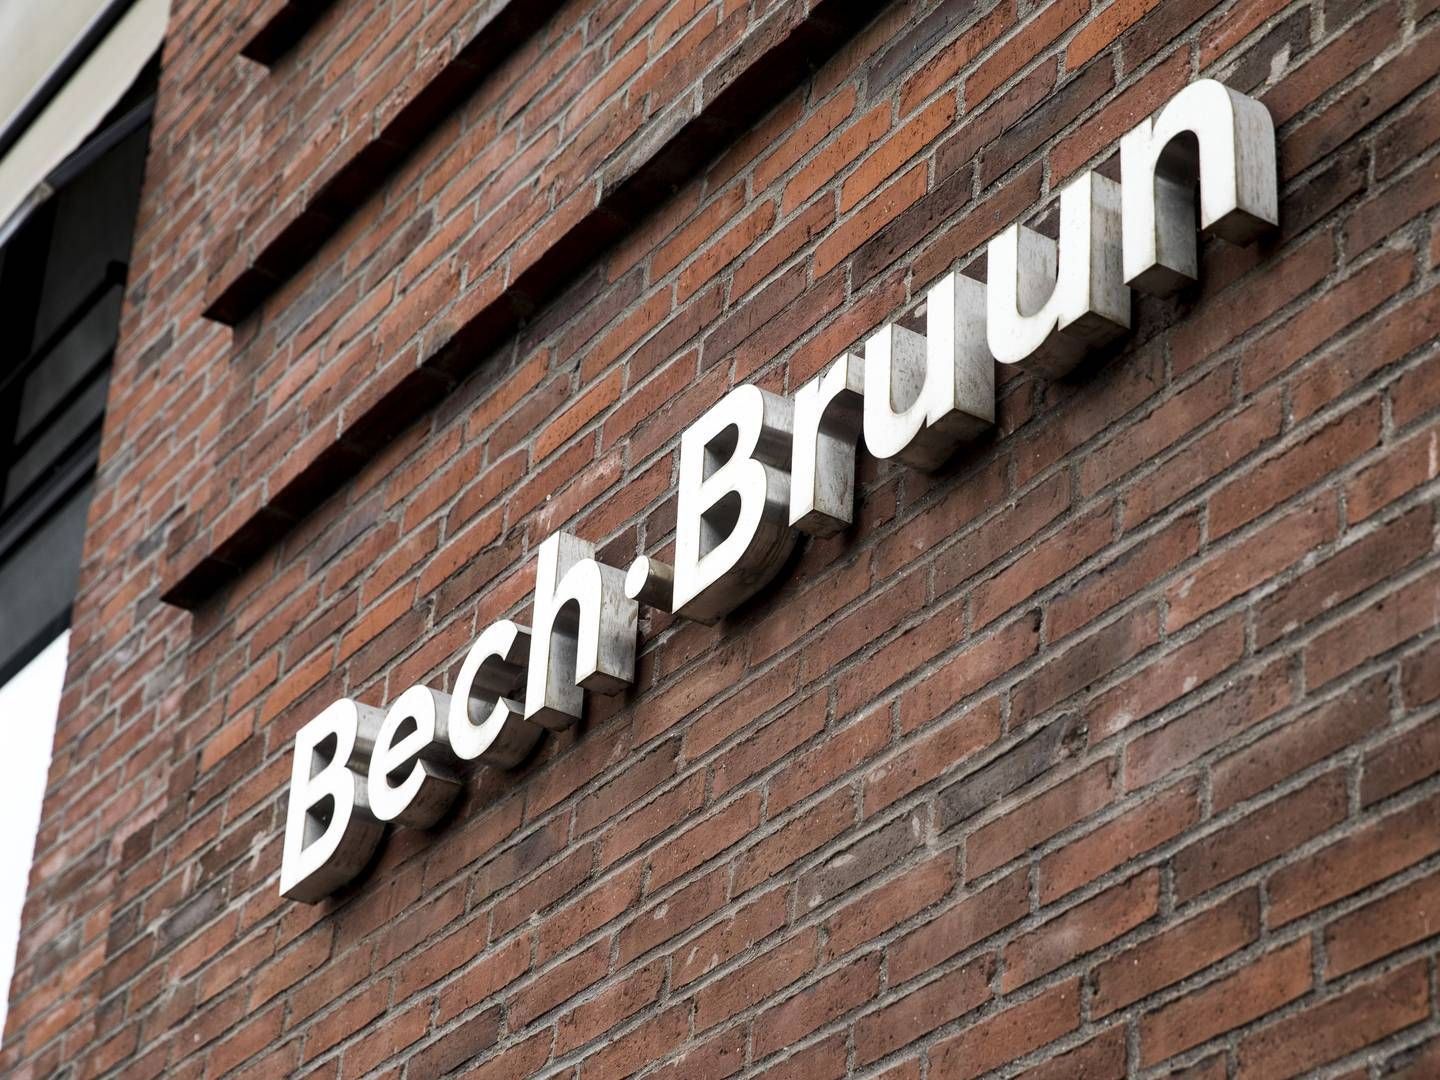 Bech-Bruun tabte torsdag sag i Højesteret, og regningen for sagsomkostningerne ligger klar. | Foto: Nikolai Linares